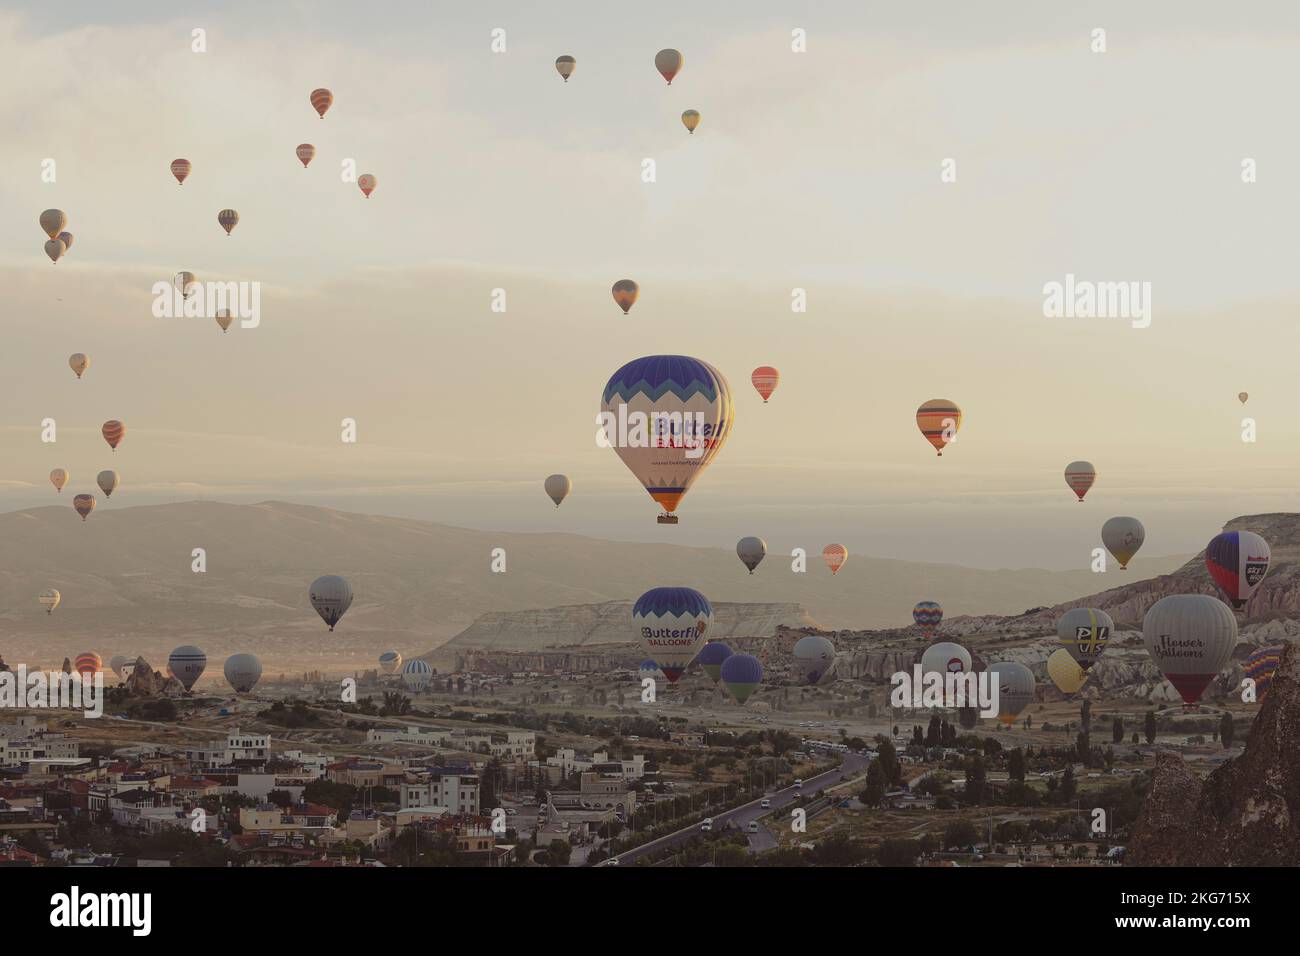 GÖREME/TURQUIE - 27 juin 2022: Ballons à air chaud dans le ciel à l'aube en turquie Banque D'Images